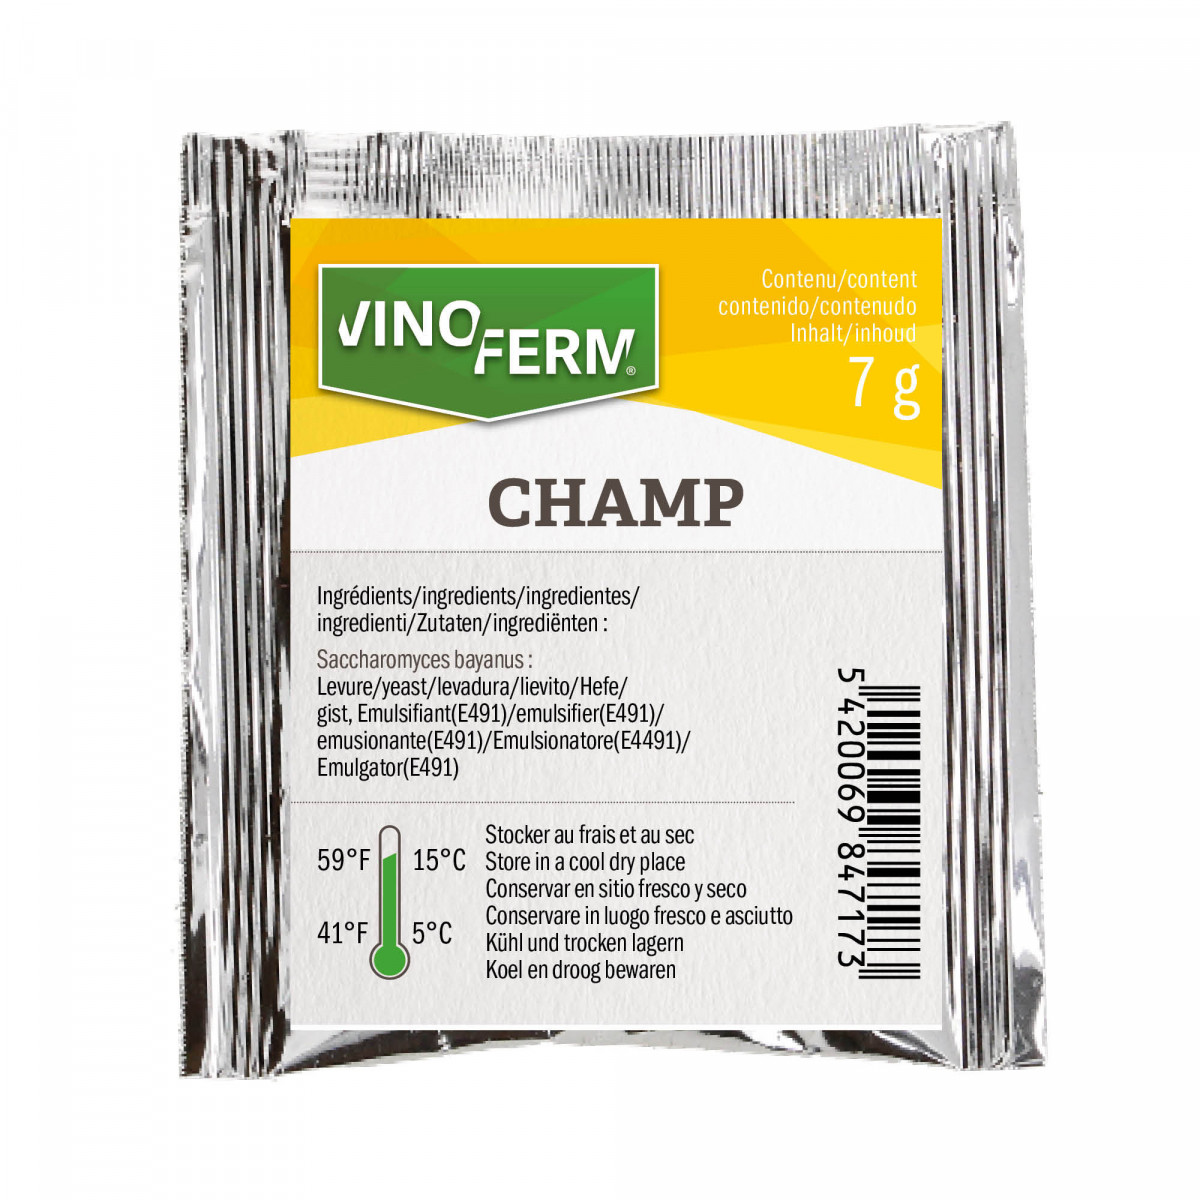 Dried wine yeast Vinoferm  Champ 7 g